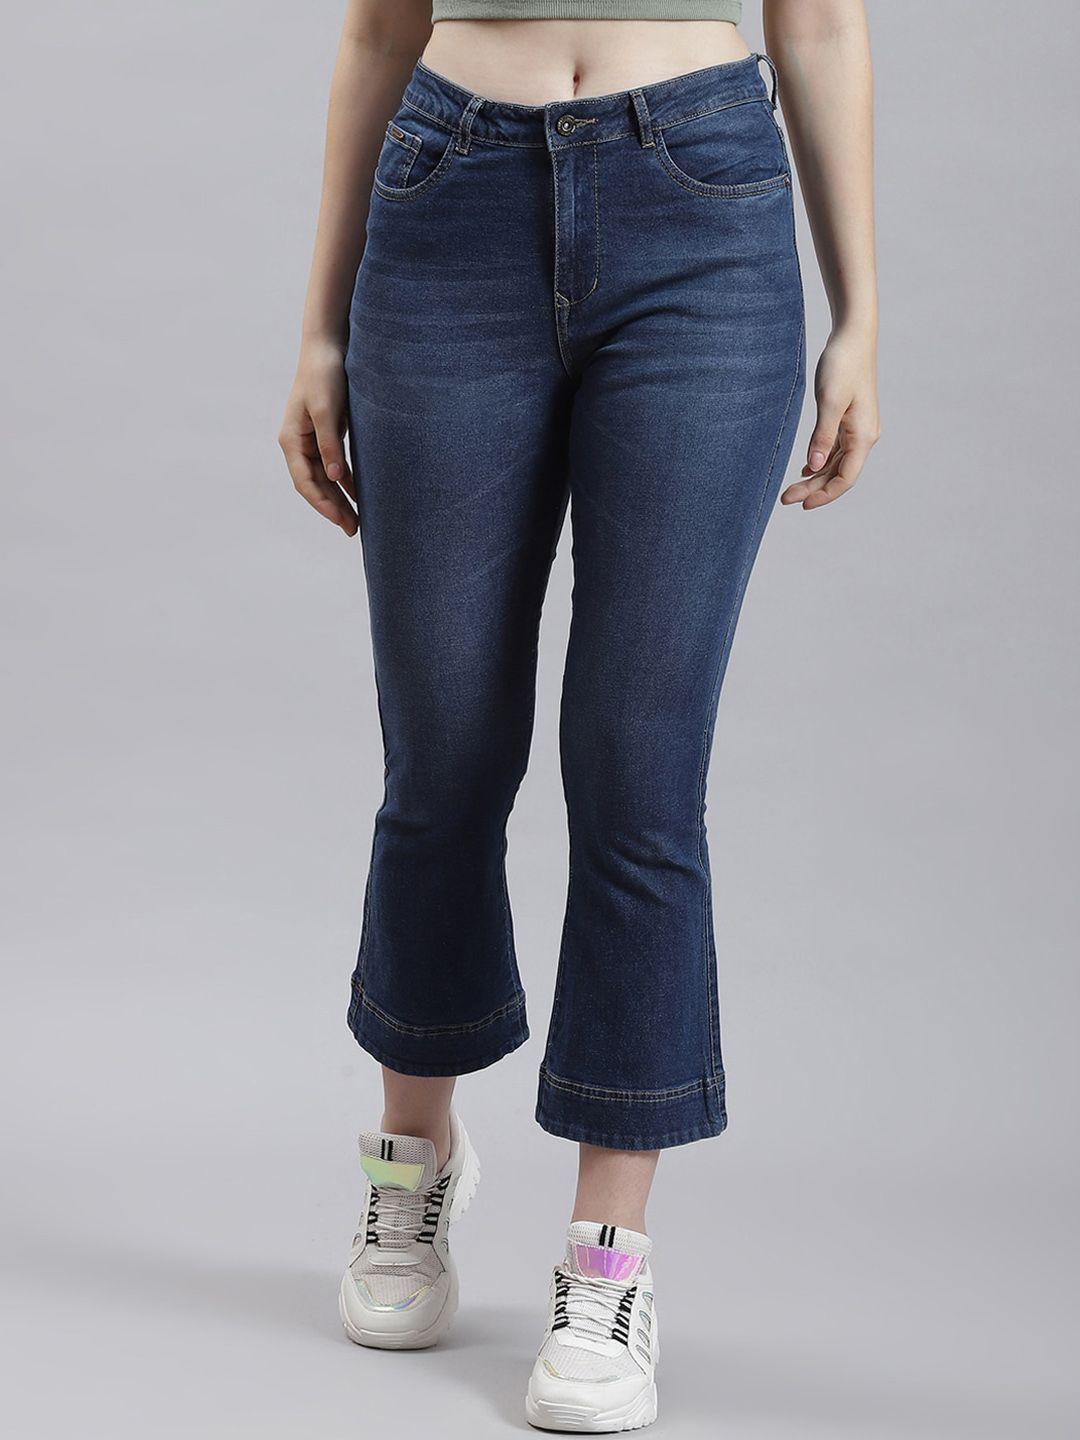 monte-carlo-women-light-fade-clean-look-bootcut-jeans